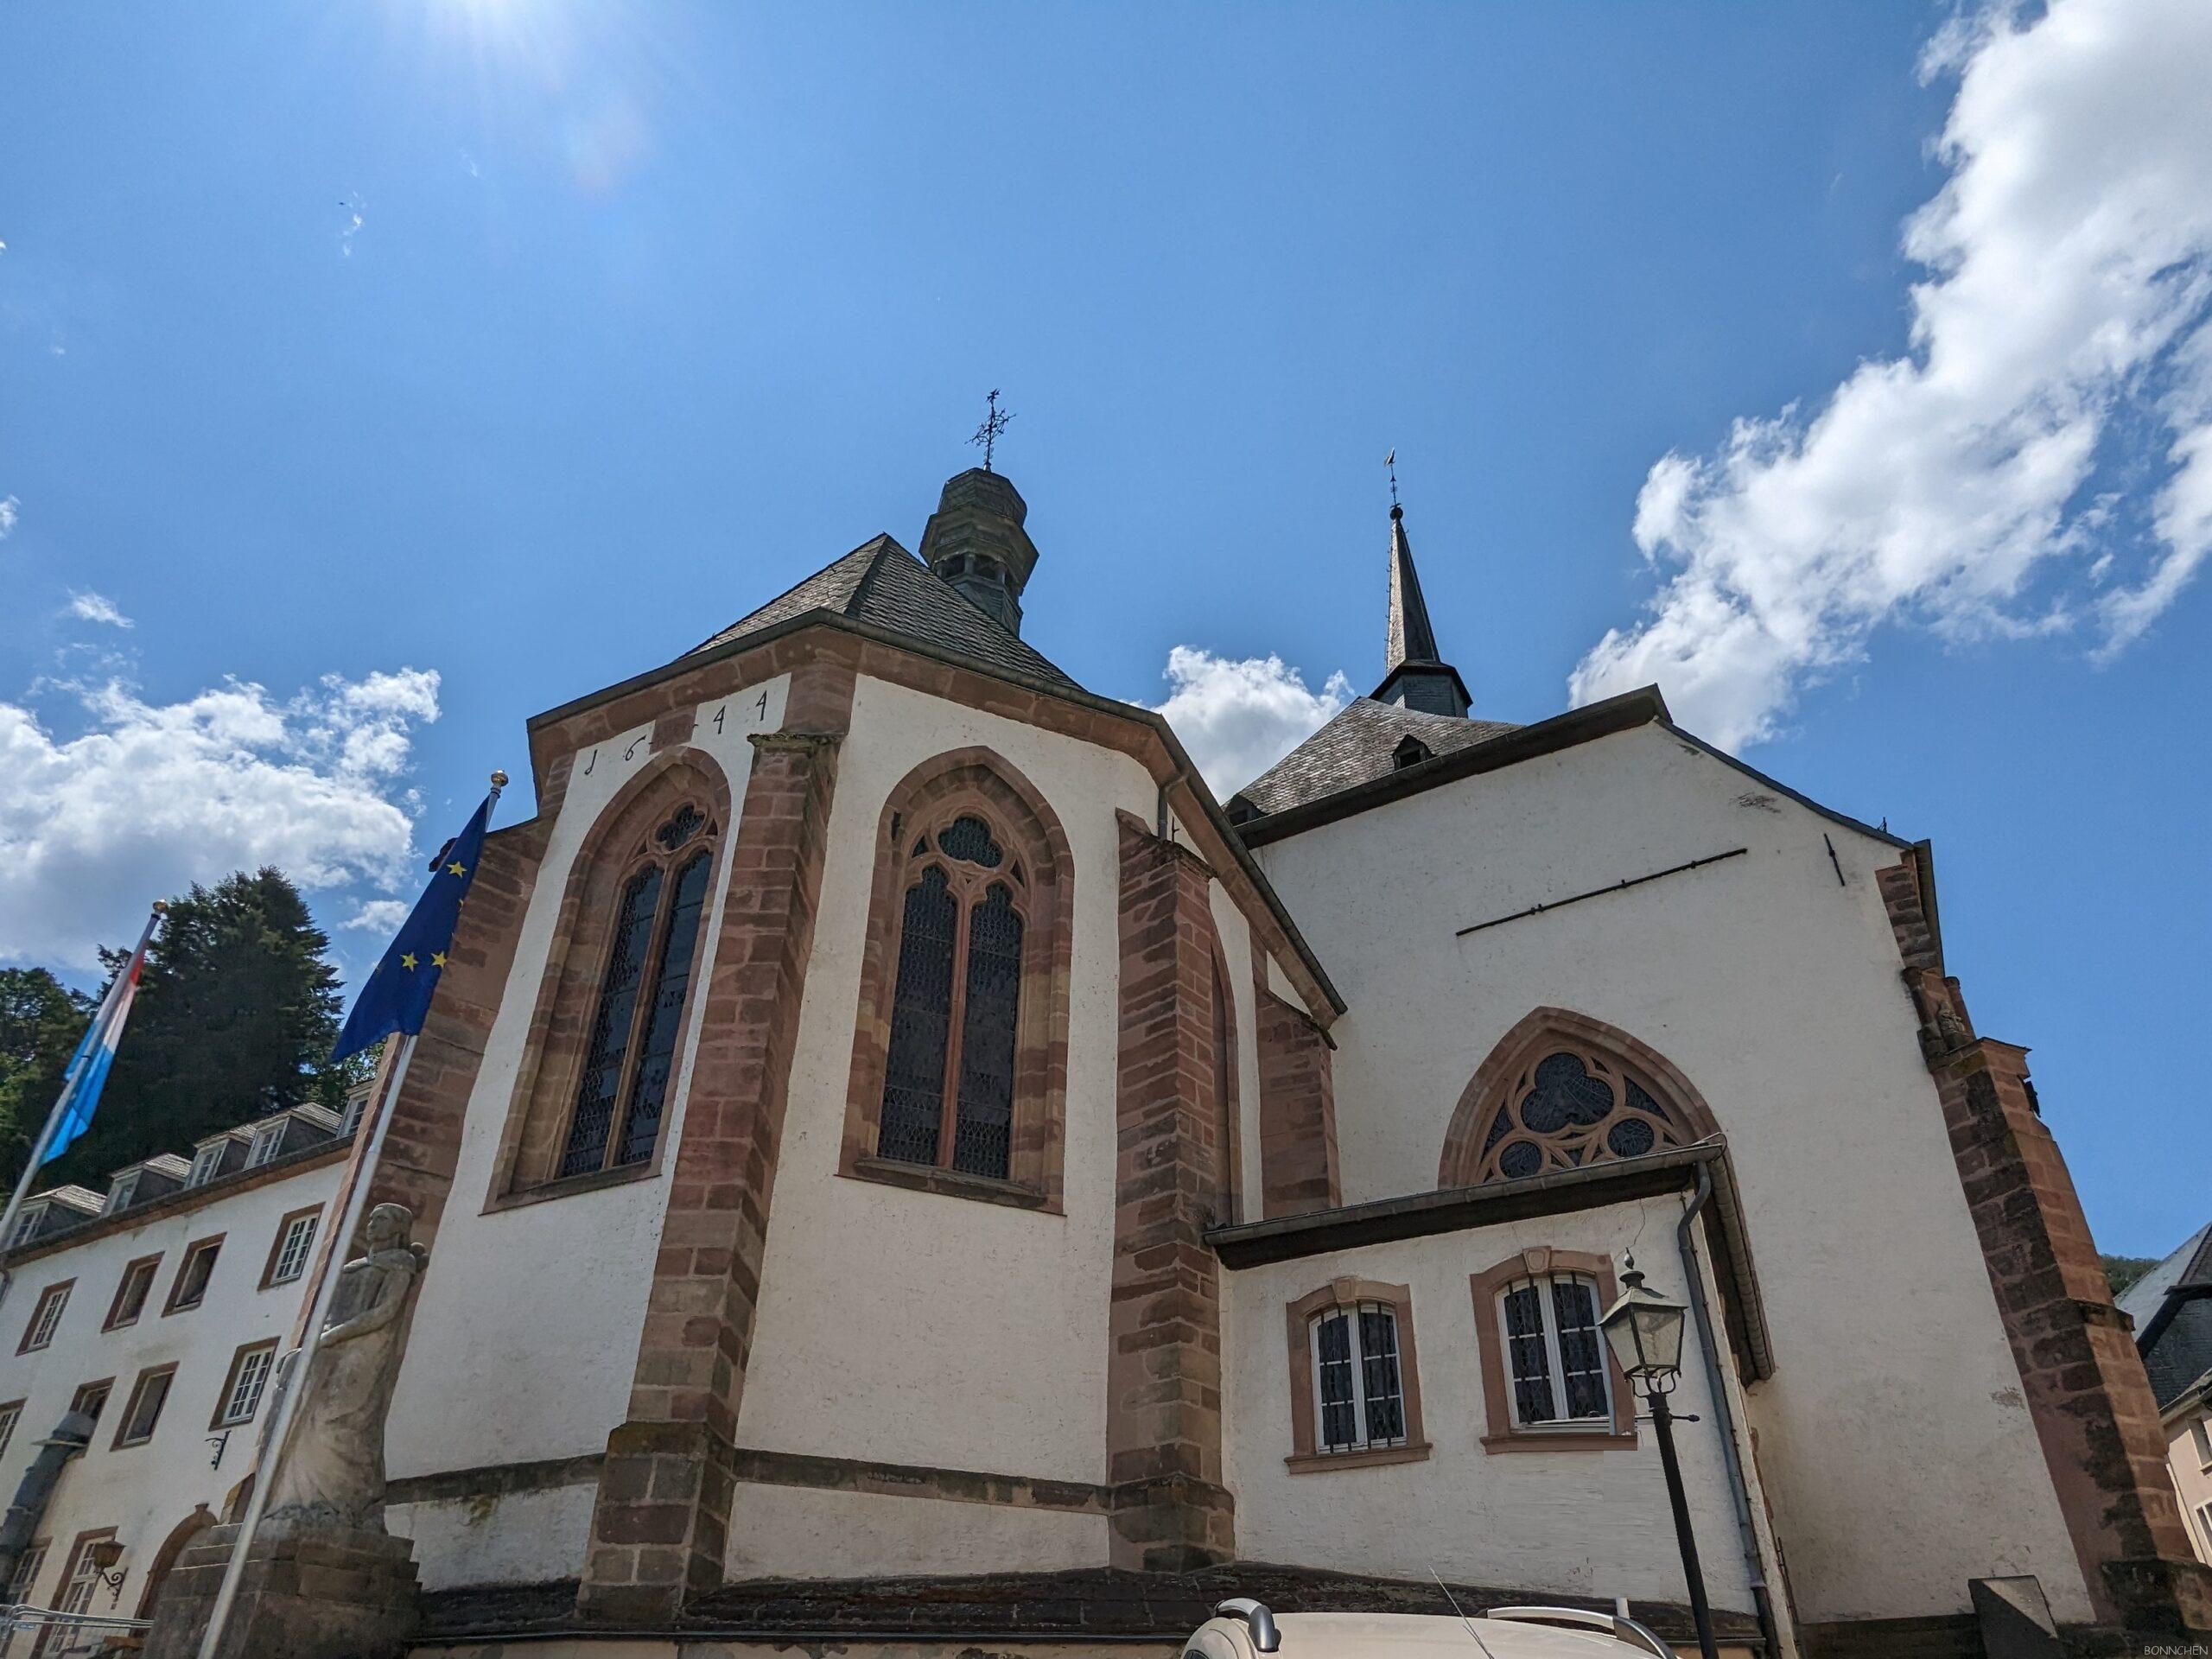 Trinitarierkirche auf dem Vianden Stadtrundgang